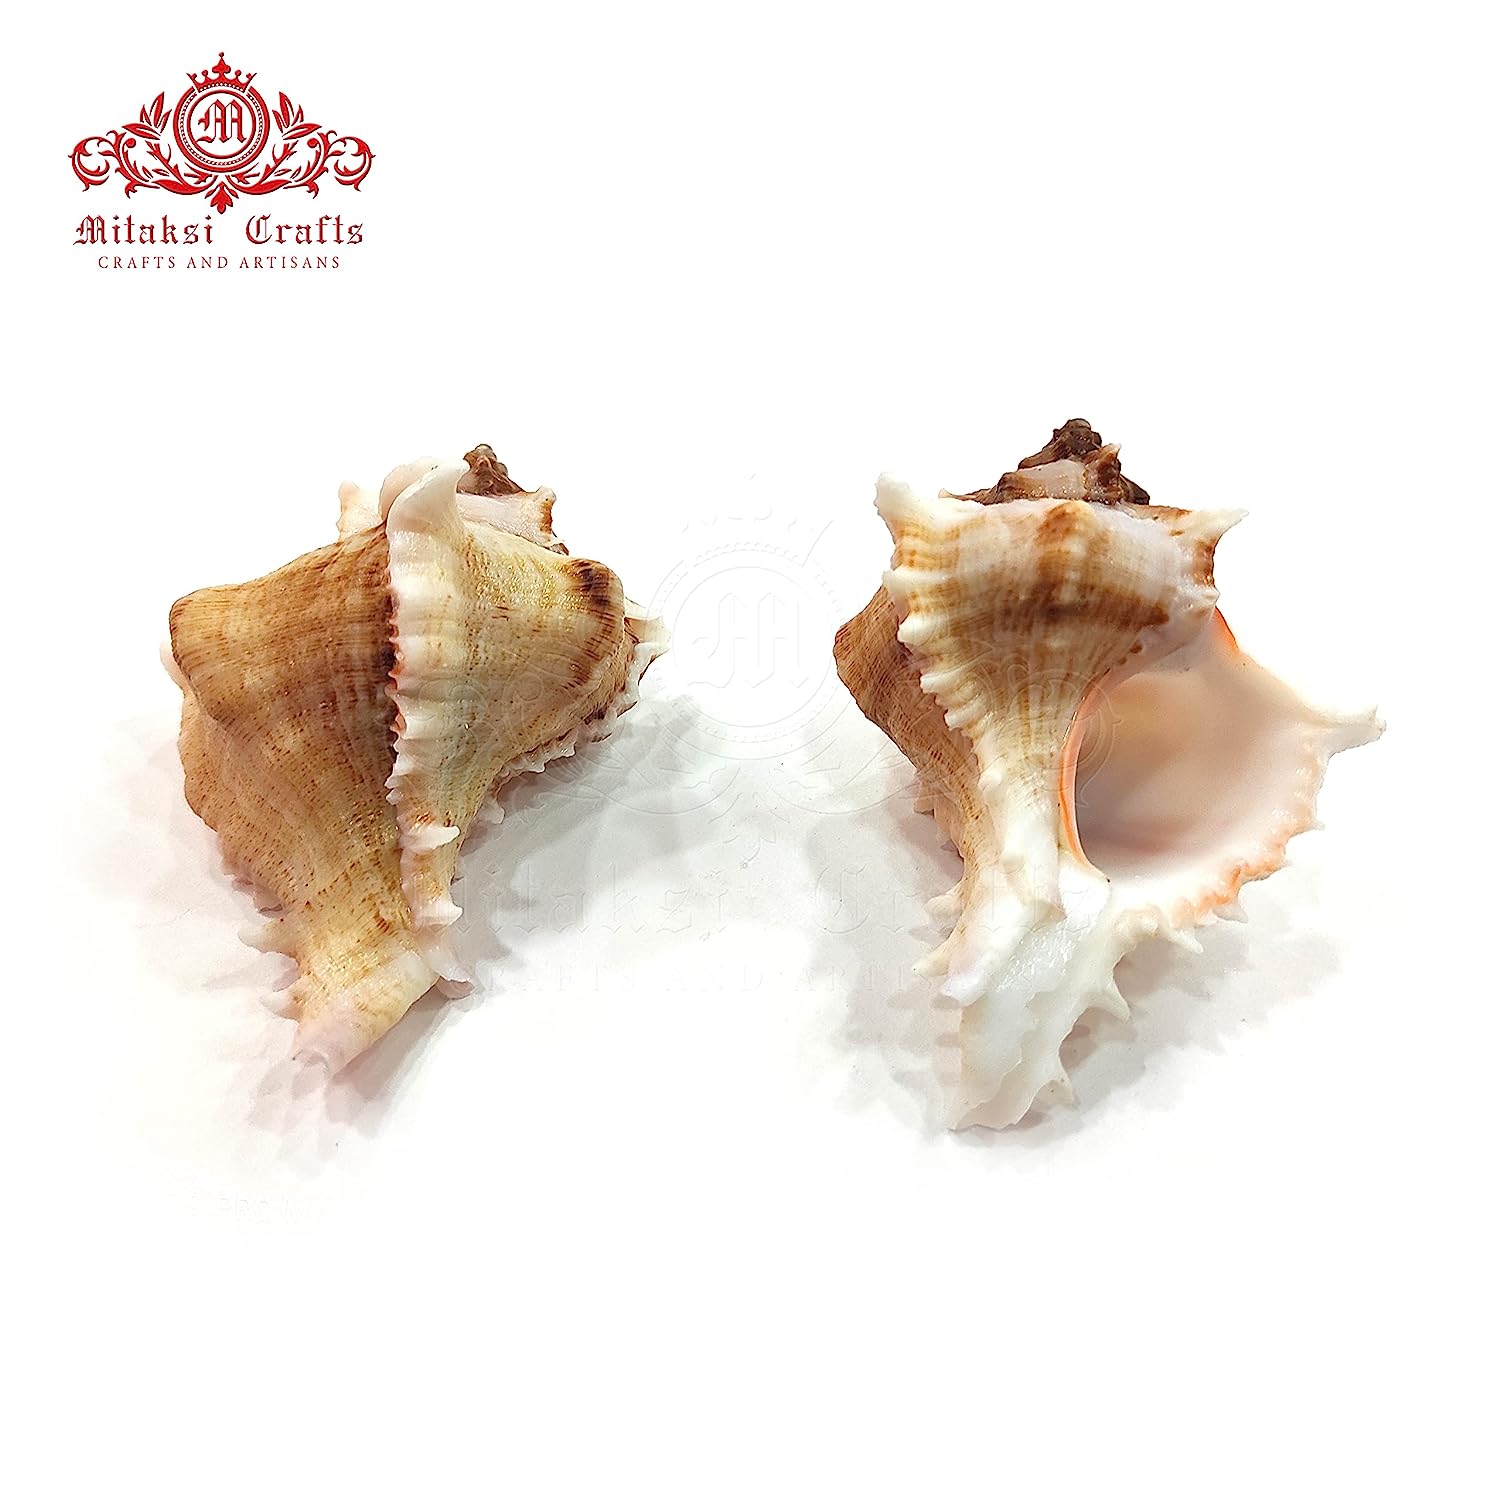 Seashell Arts and Crafts - Kottakka Mulli - Virgin Murex - Chicoreus Virgineus - Packof 10